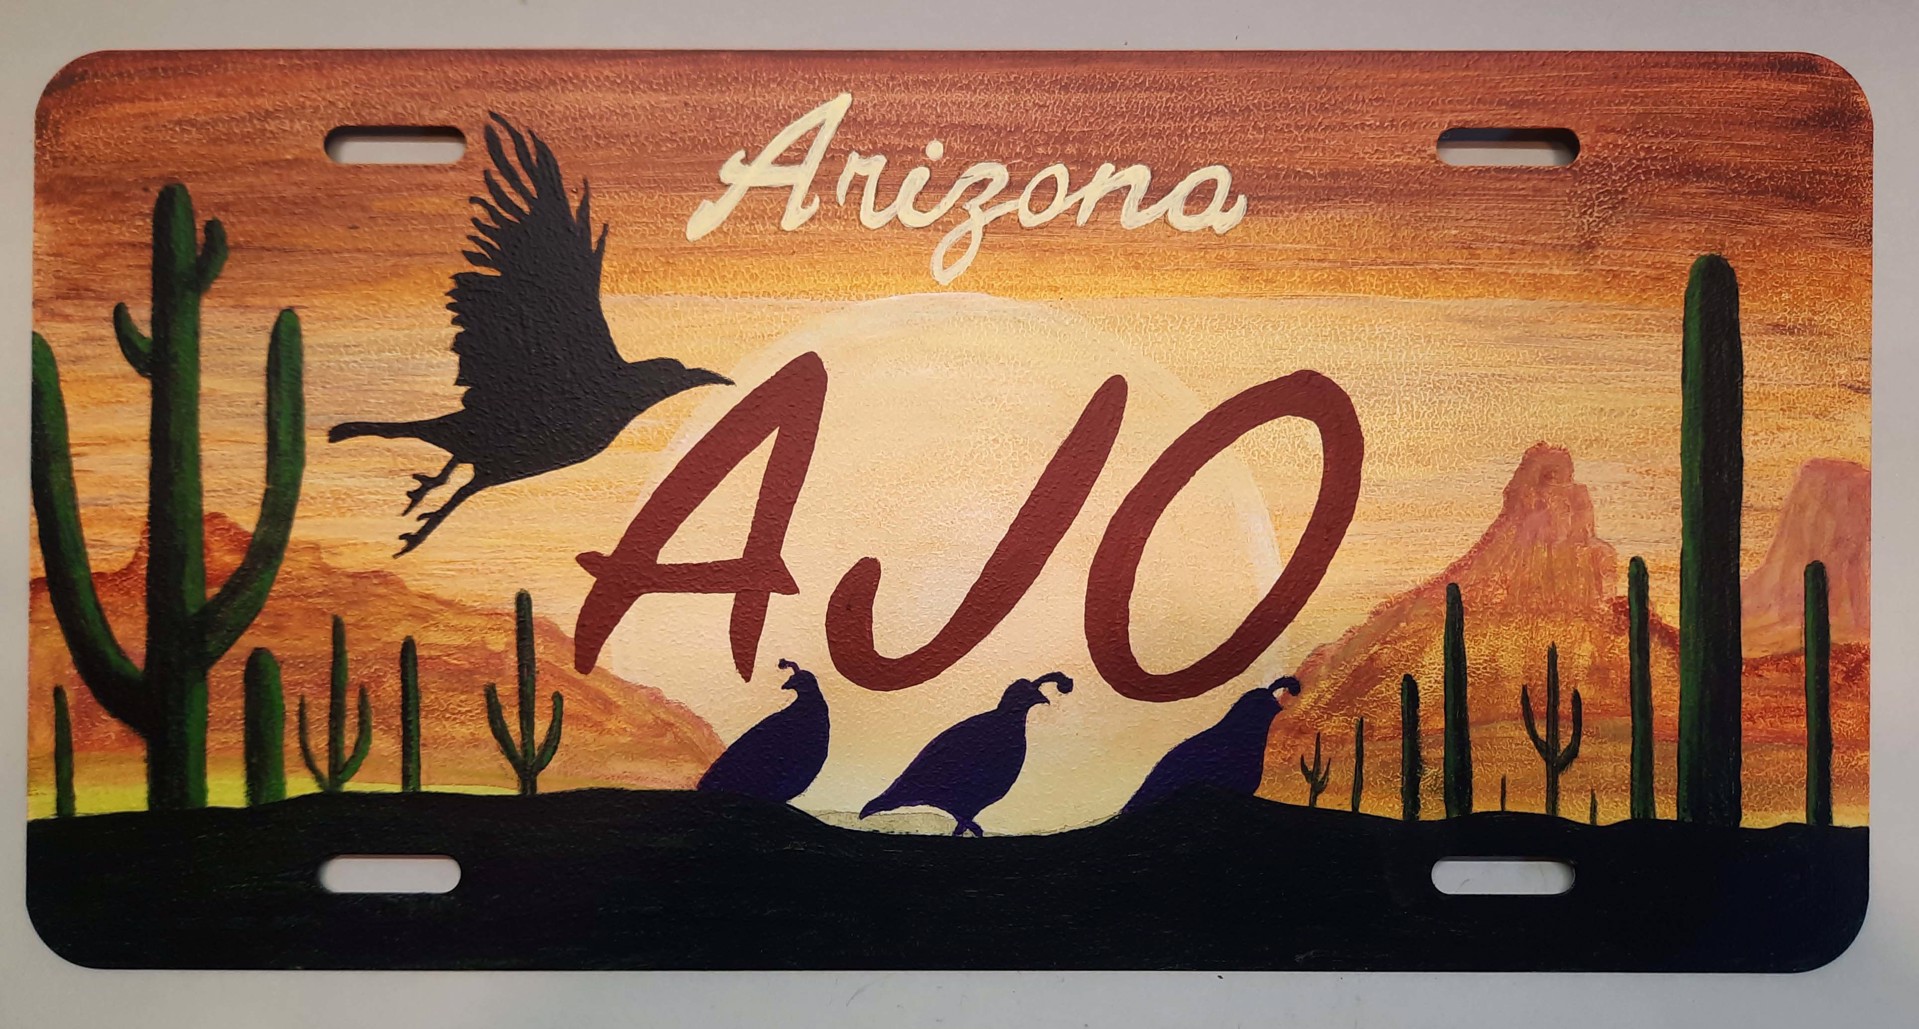 Ajo Quail Raven License Plate, 5054 by John Wulf